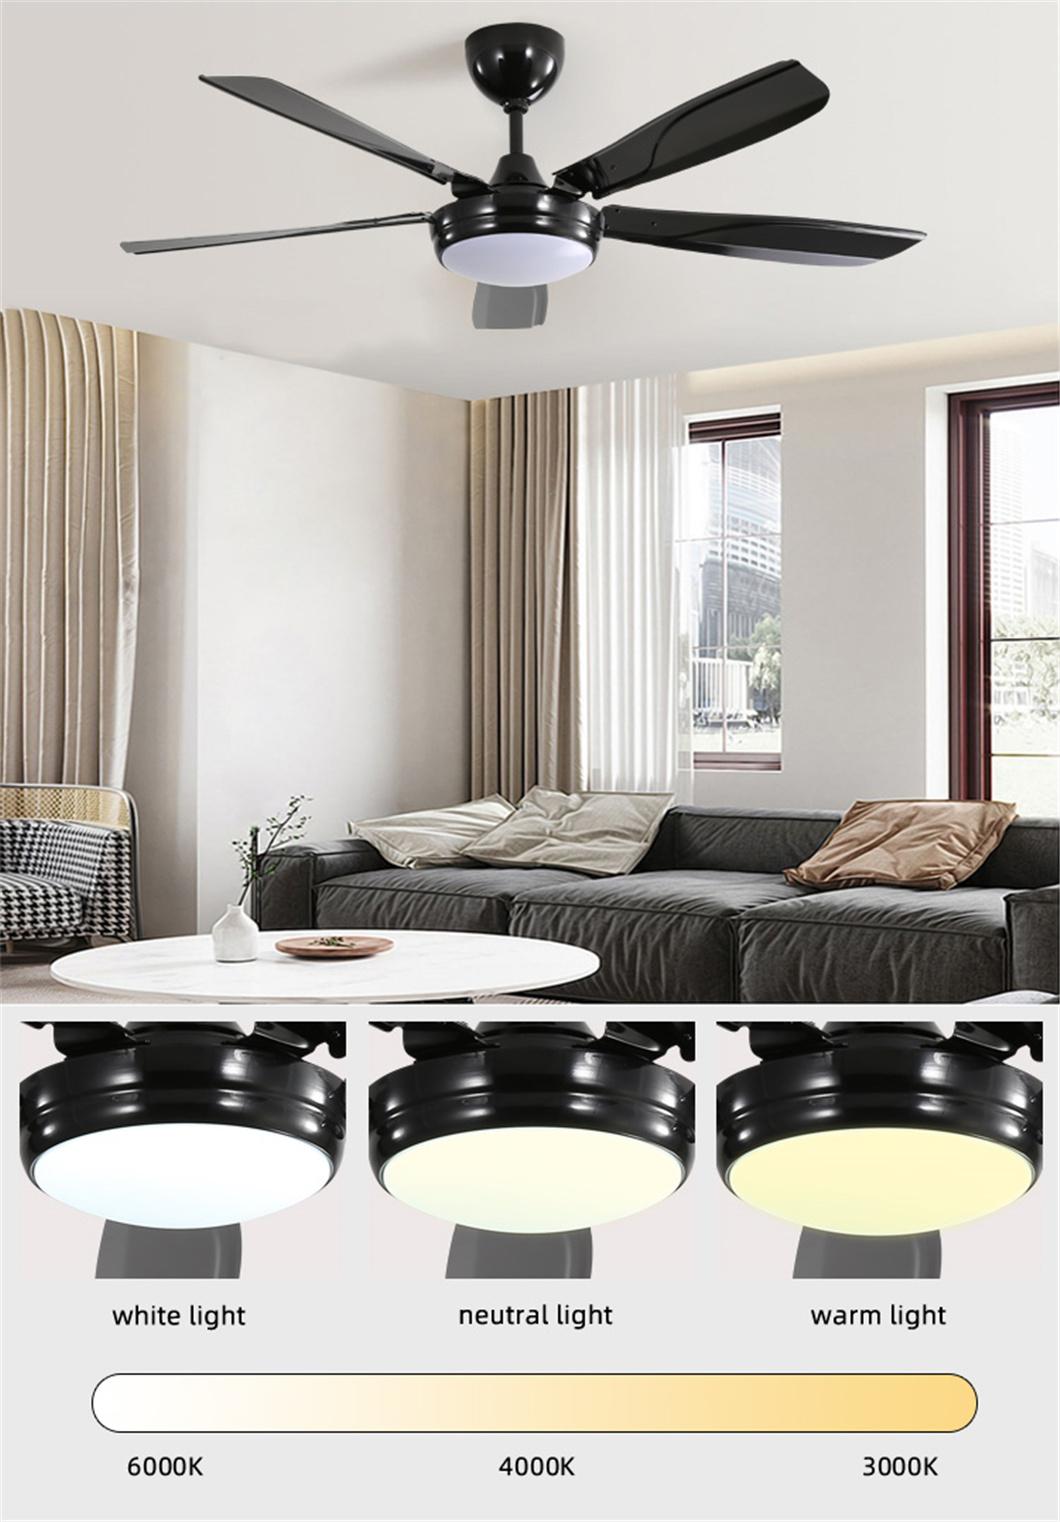 Simple Design 5 Fan Speed 52 Inch 5 Iron Blades LED Ceiling Fan Light